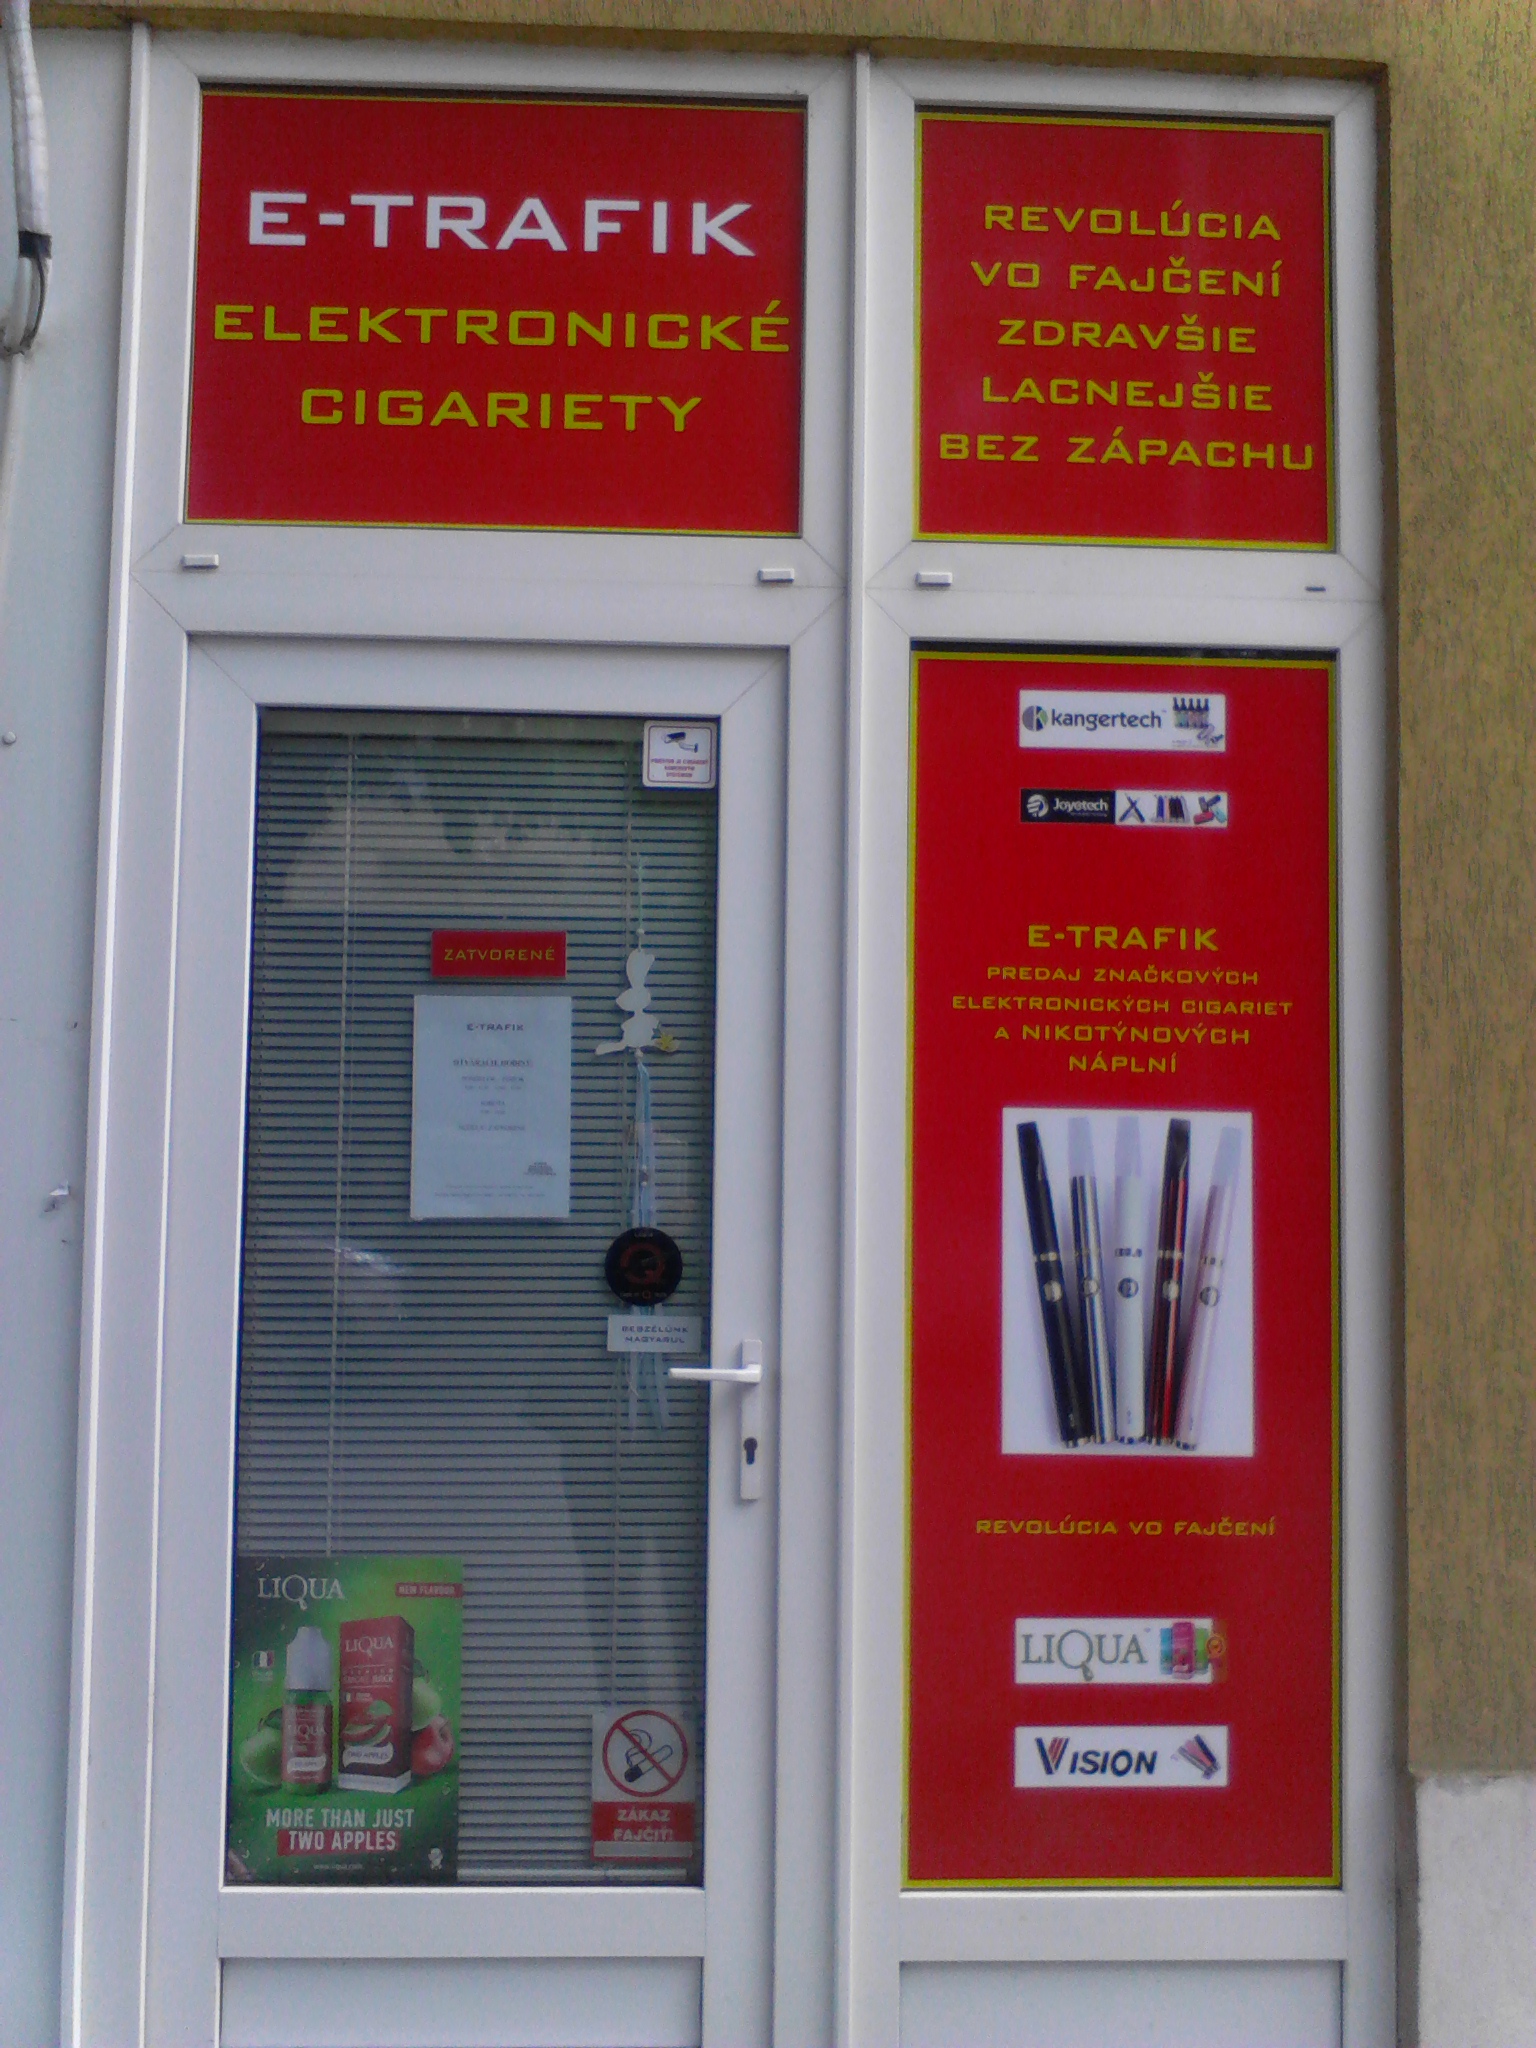 Predaj elektronických cigariet, príslušenstva, nikotinové a beznikotinové liquidy a bázy - Sylvia Patkolóová - Elektronické cigarety E-TRAFIK